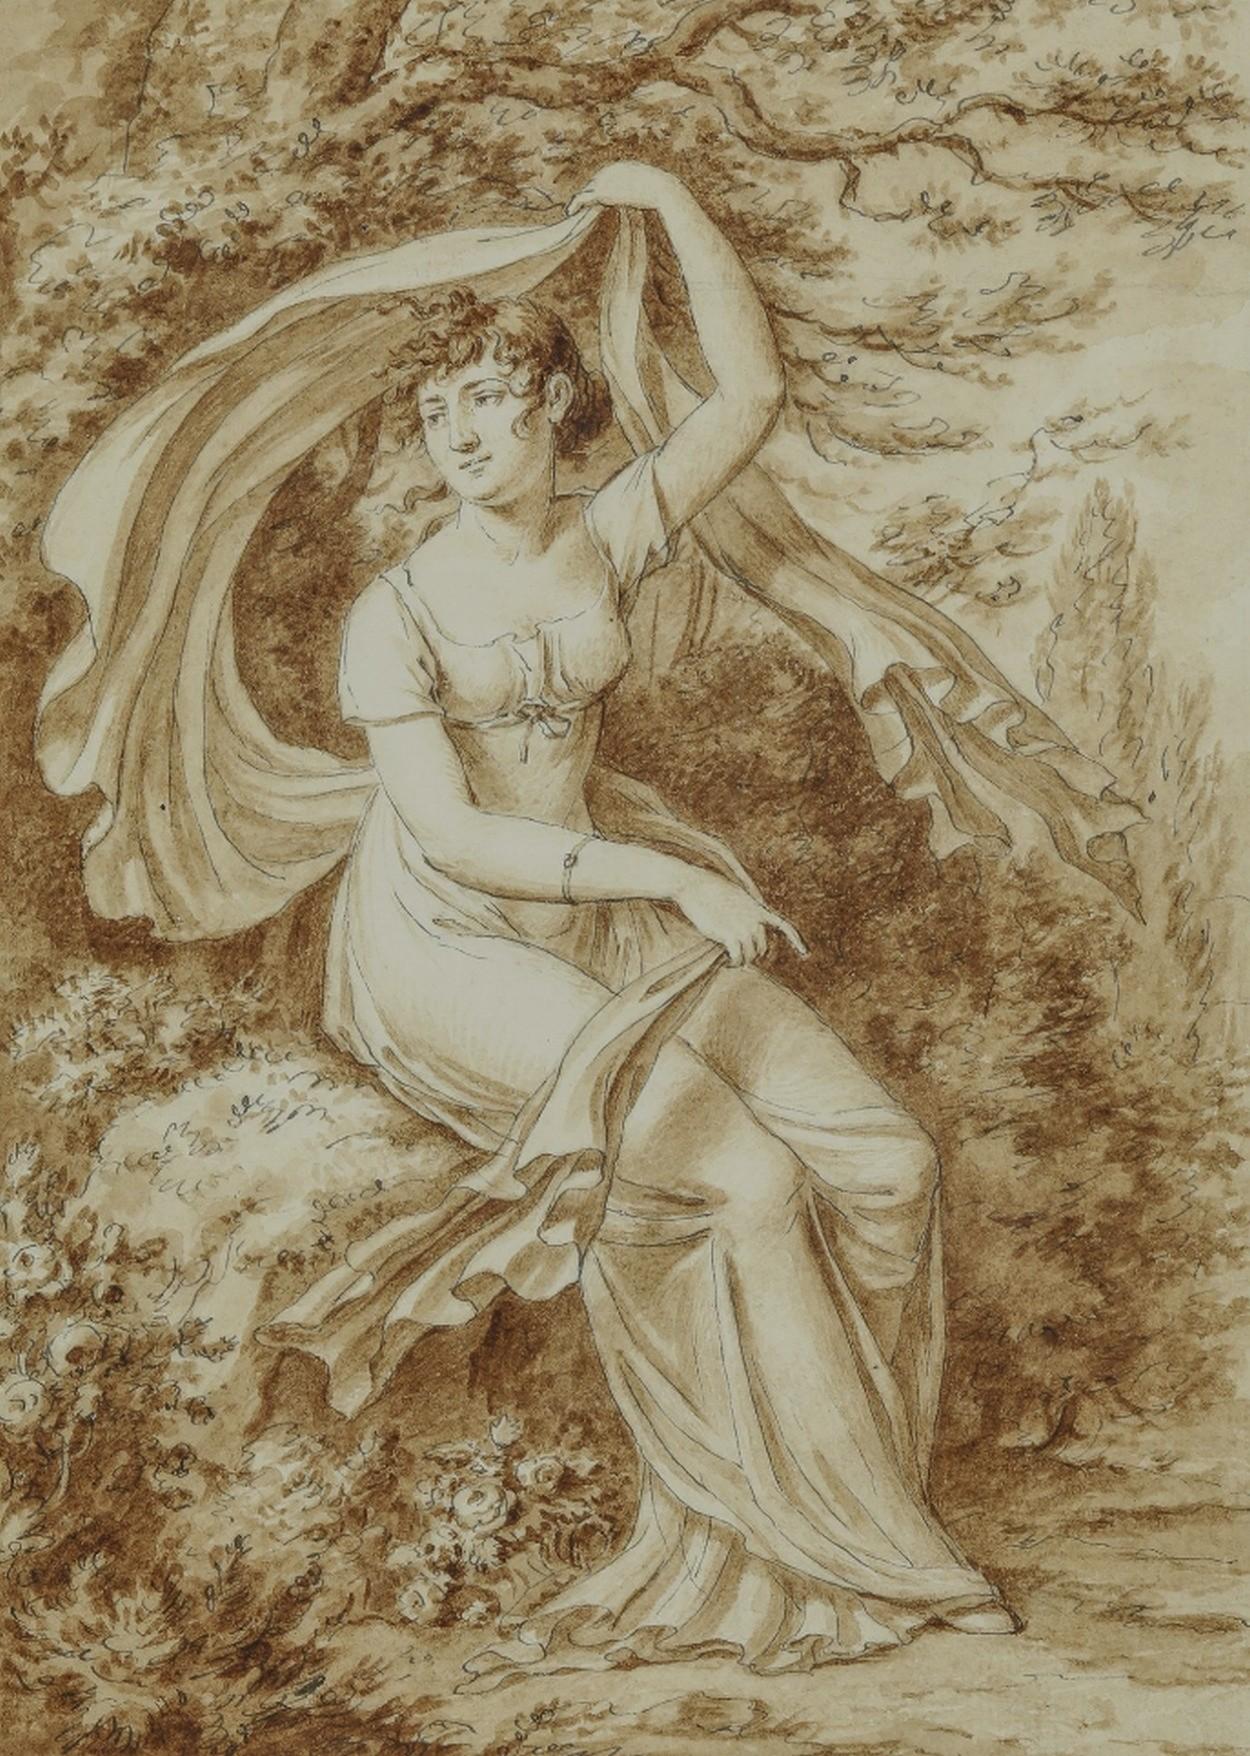 Jean-Henri Cless (1774-1812) 
Porträt einer jungen Frau in einer Landschaft
signiert "Cless fec" für fecit unten links 
Braune Tinte und lavierte braune Tinte auf Bleistift
Größe des Blattes: 31,5 x 22 cm
Größe des Motivs: 24,5 x 17 cm
sehr einfach